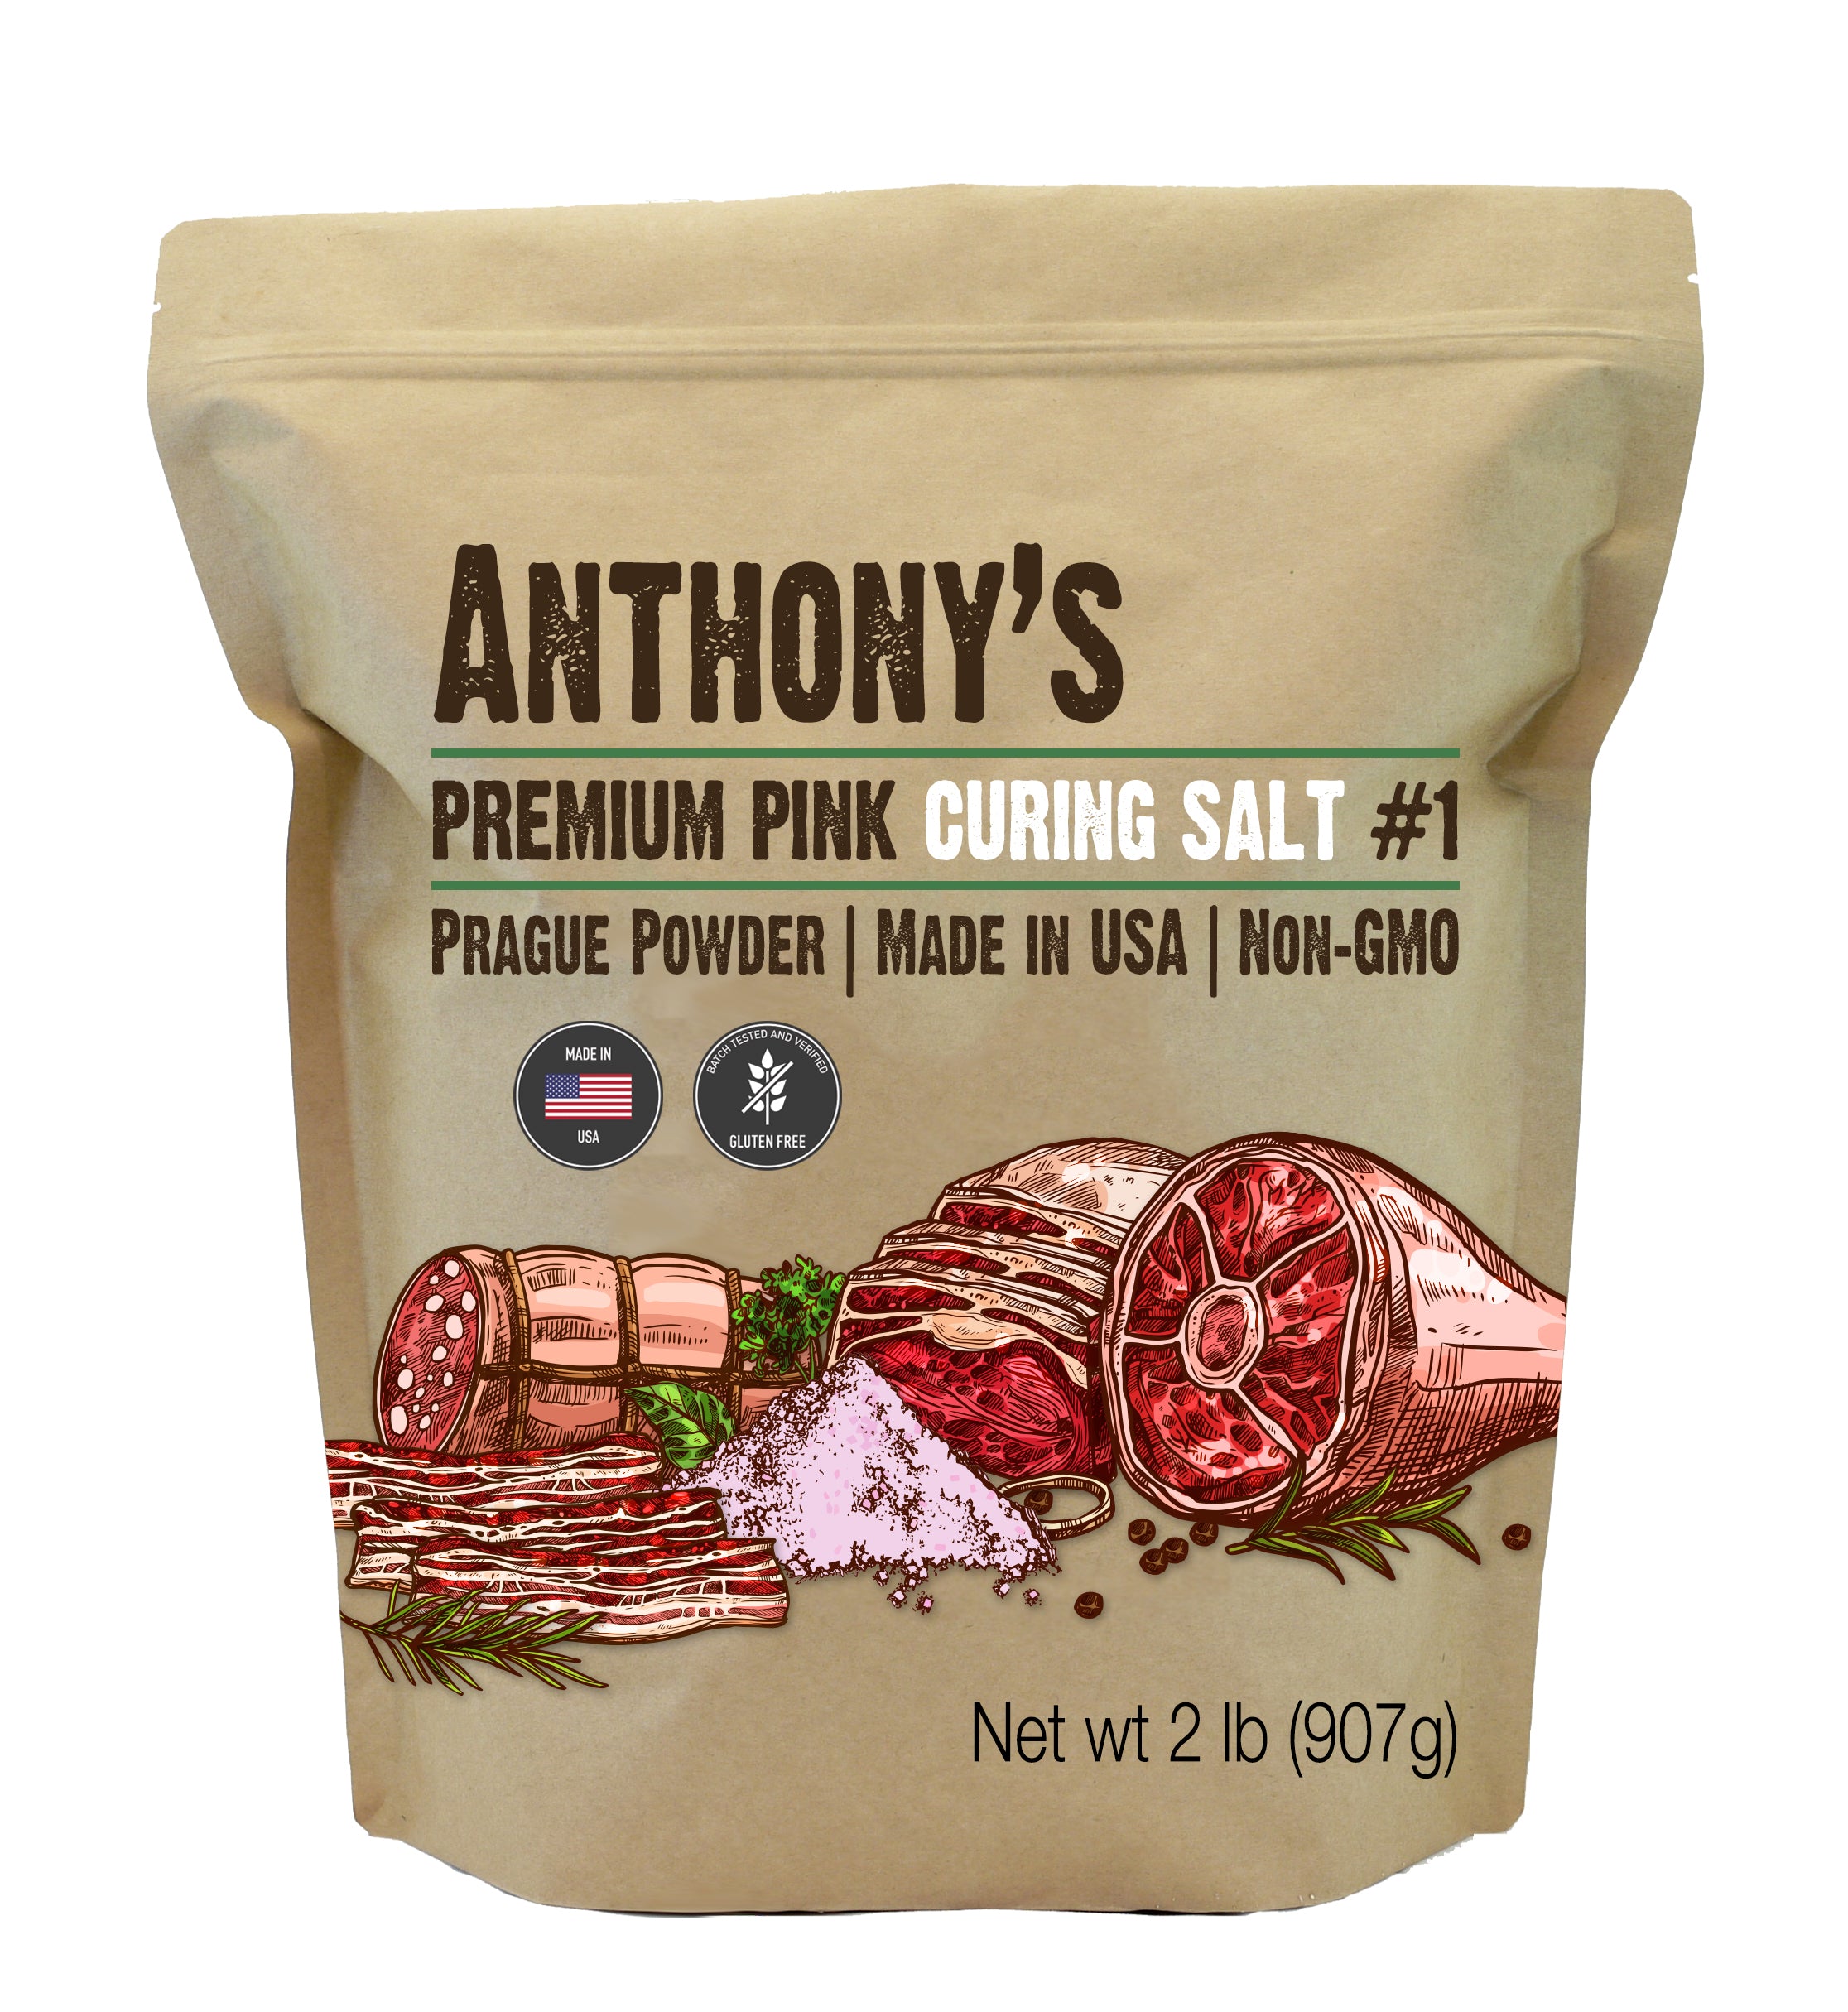 Premium Pink Curing Salt #1: Batch Tested & Verified Gluten-Free